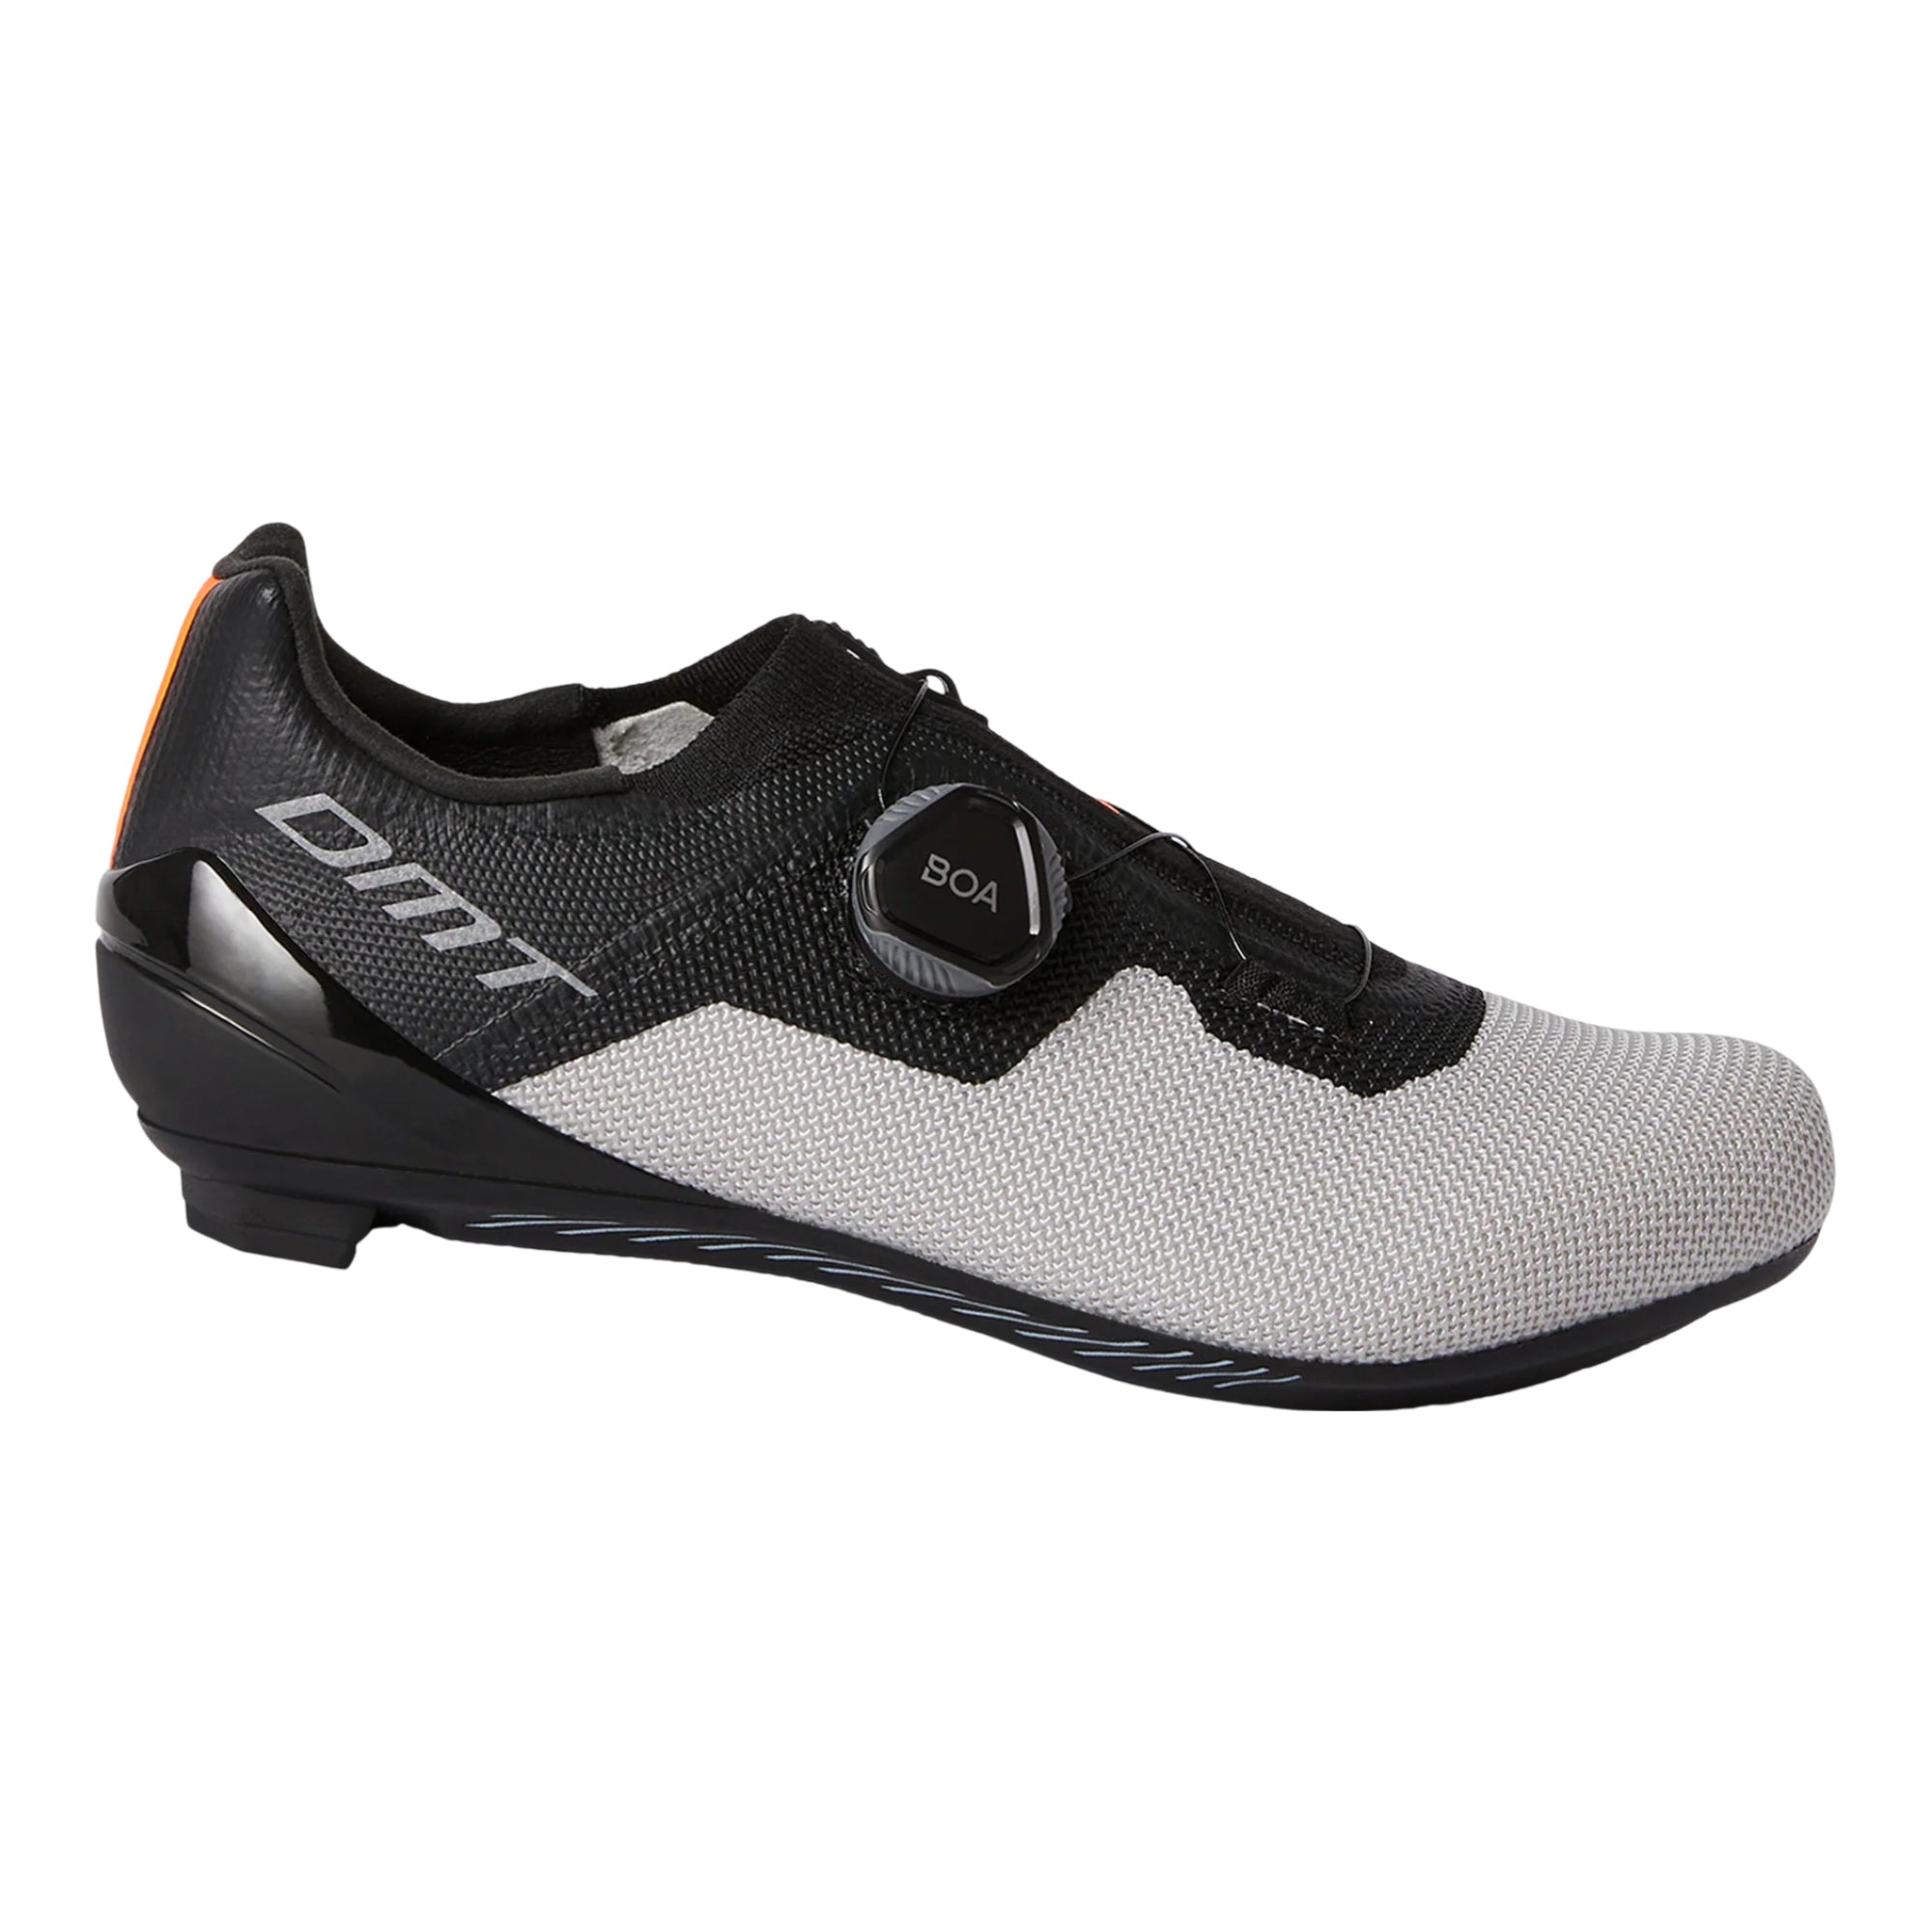 Zapatillas ciclismo ruta DMT KR4 talla 40 EU color Black/Silver